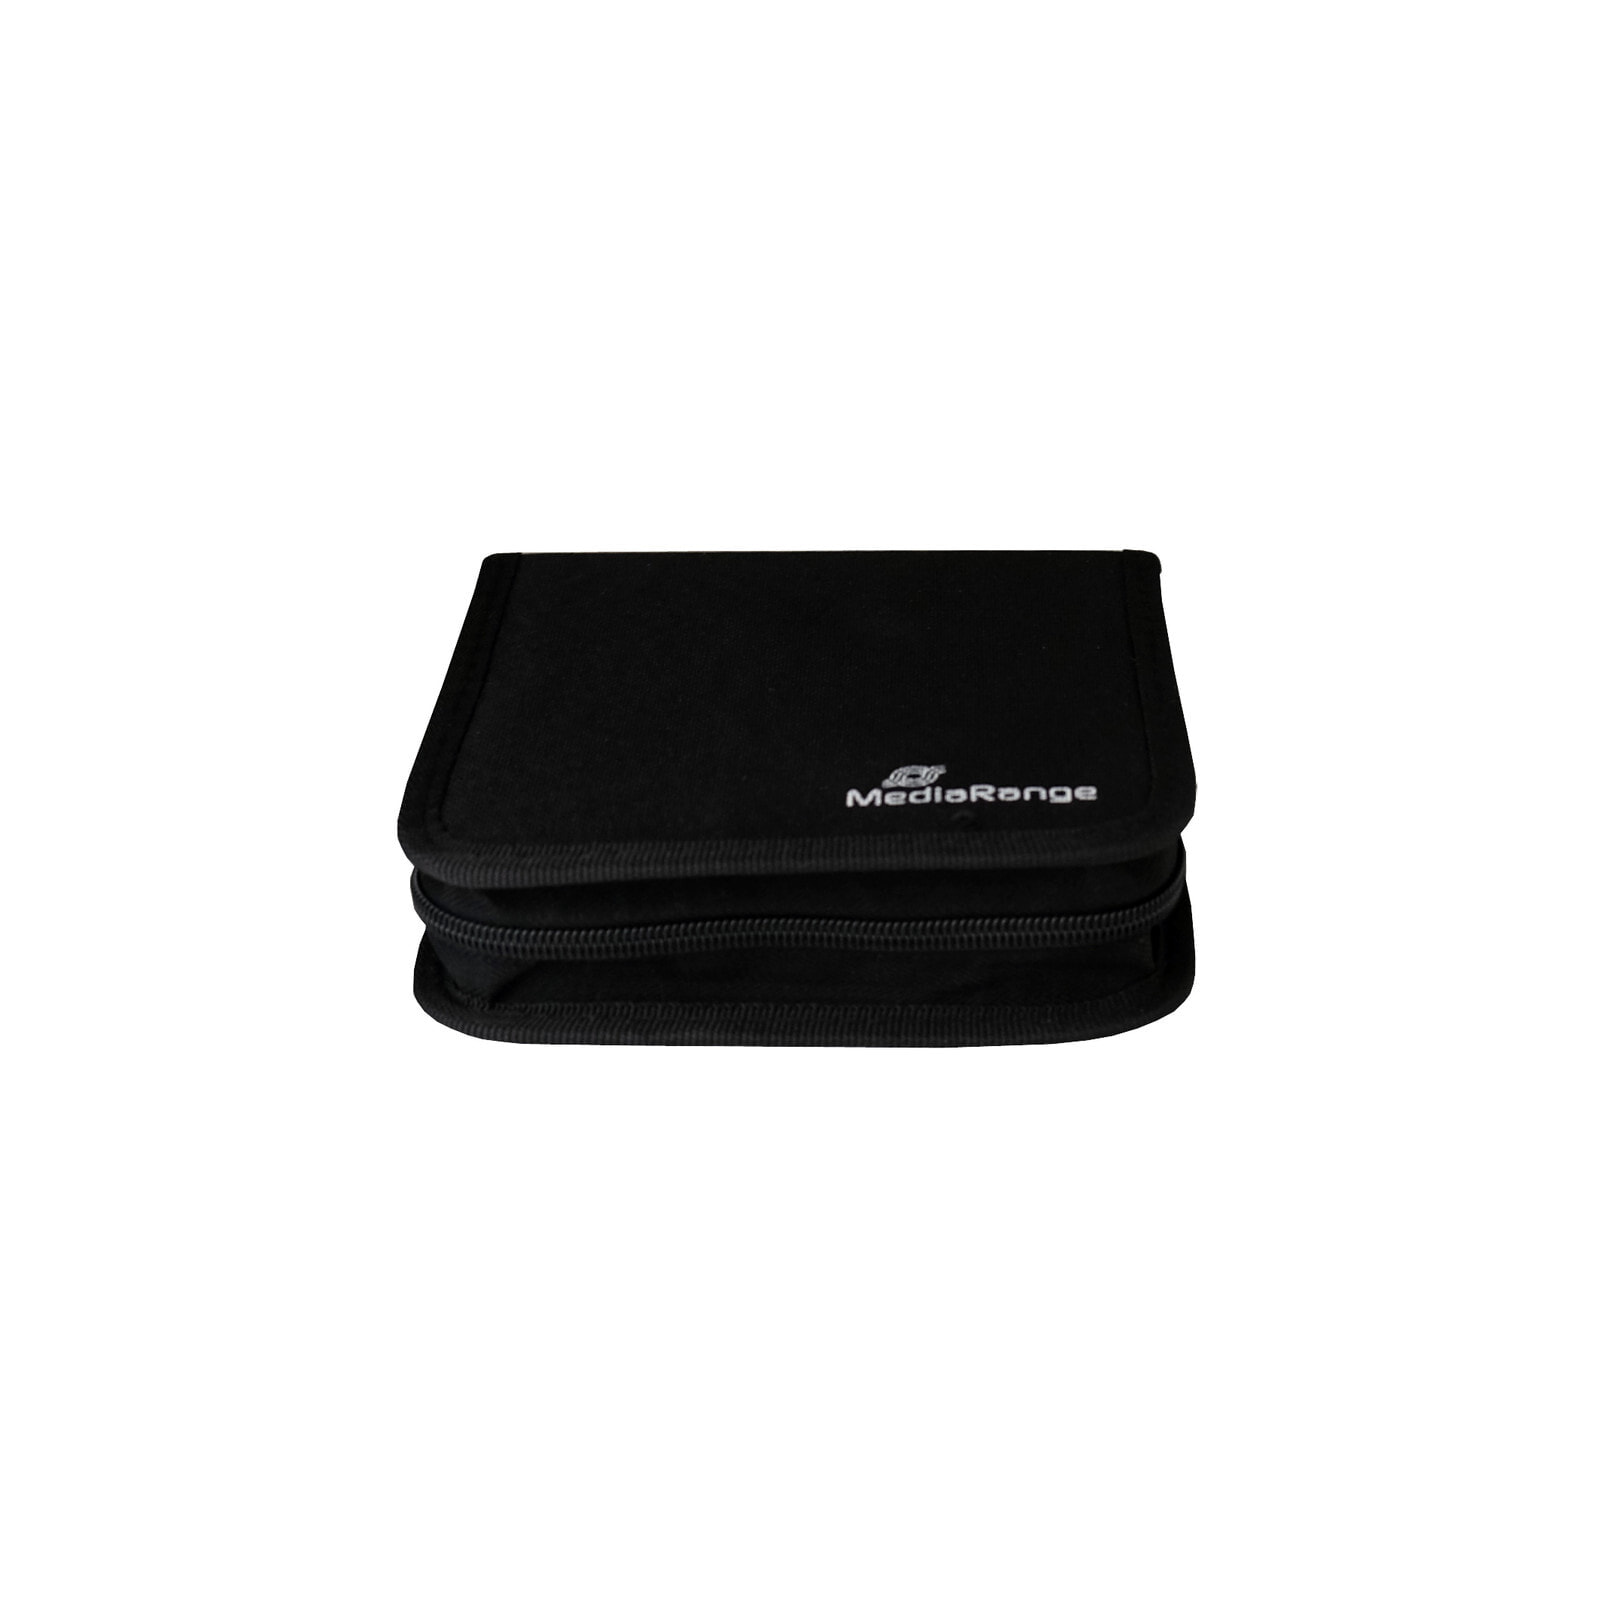 MediaRange BOX50 чехлы для оптических дисков чехол-бумажник 24 диск (ов) Черный